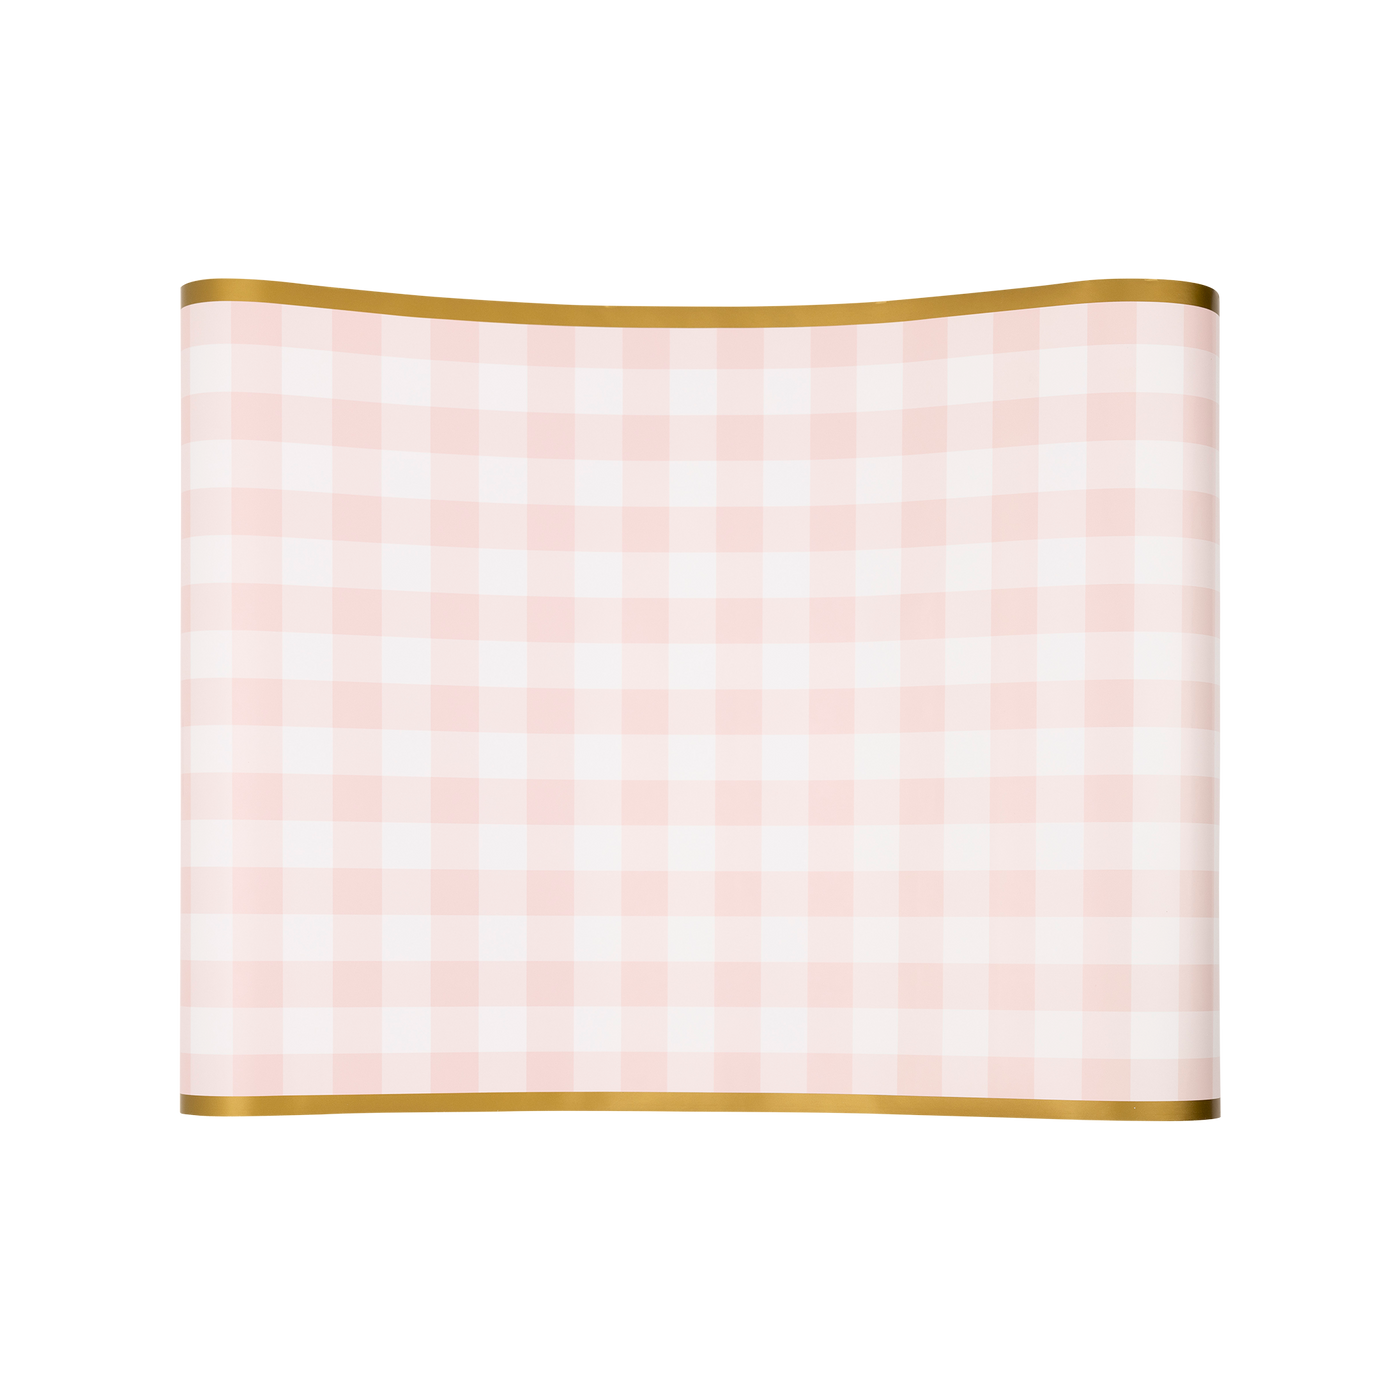 PLTBR178 - Pink Gingham Paper Table Runner